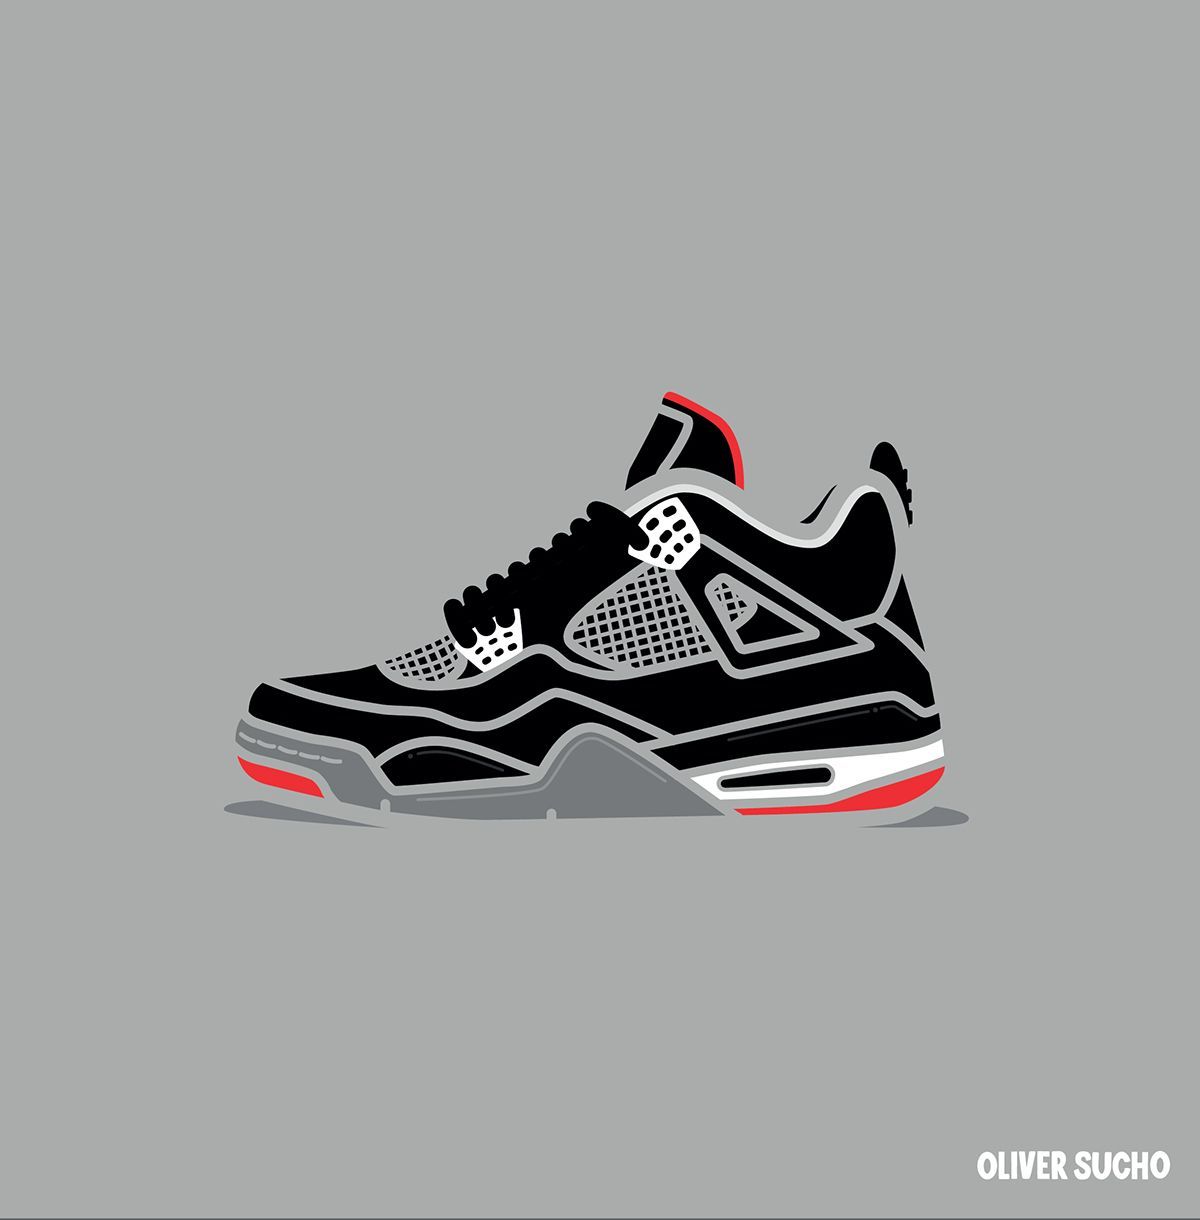 Air Jordan 4 Minimal Illustration Series. Sneaker art, Sneakers sketch, Air jordans